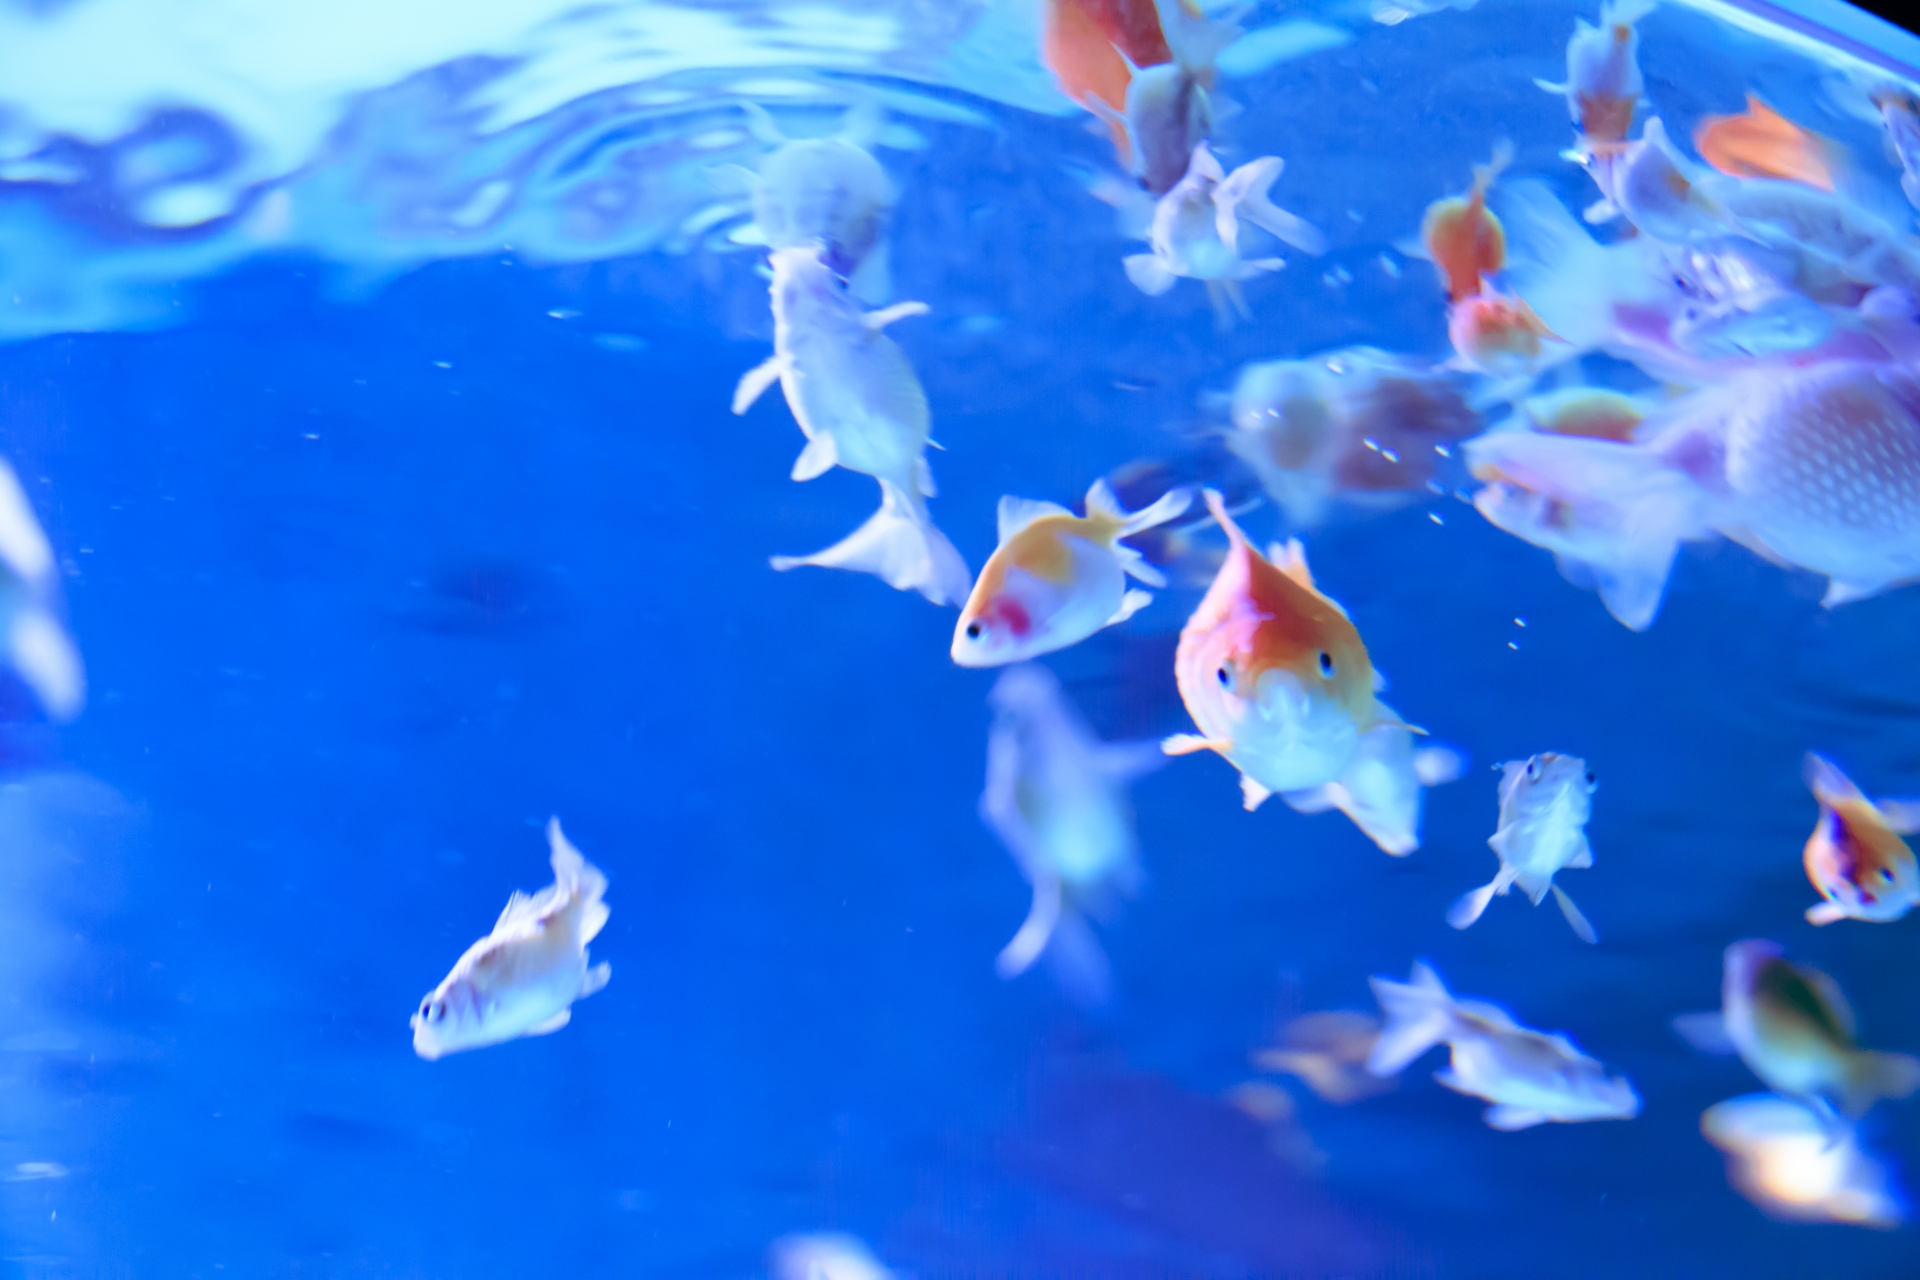 金魚の産卵の兆候の見分け方 繁殖行動 産卵 孵化について解説 ヨミビト